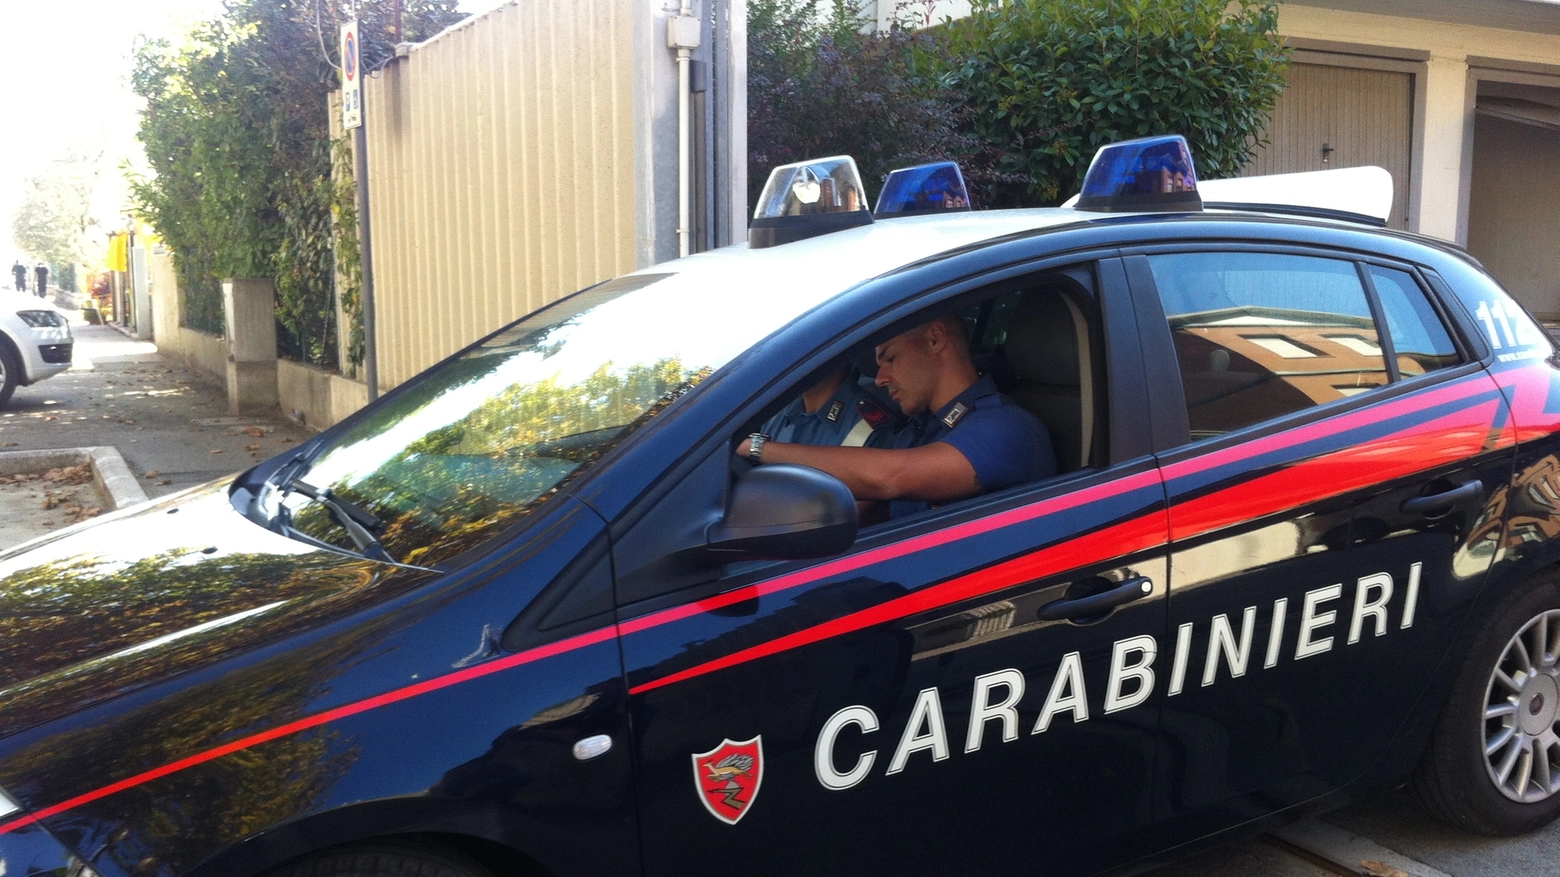 Le indagini sono state svolte dai carabinieri